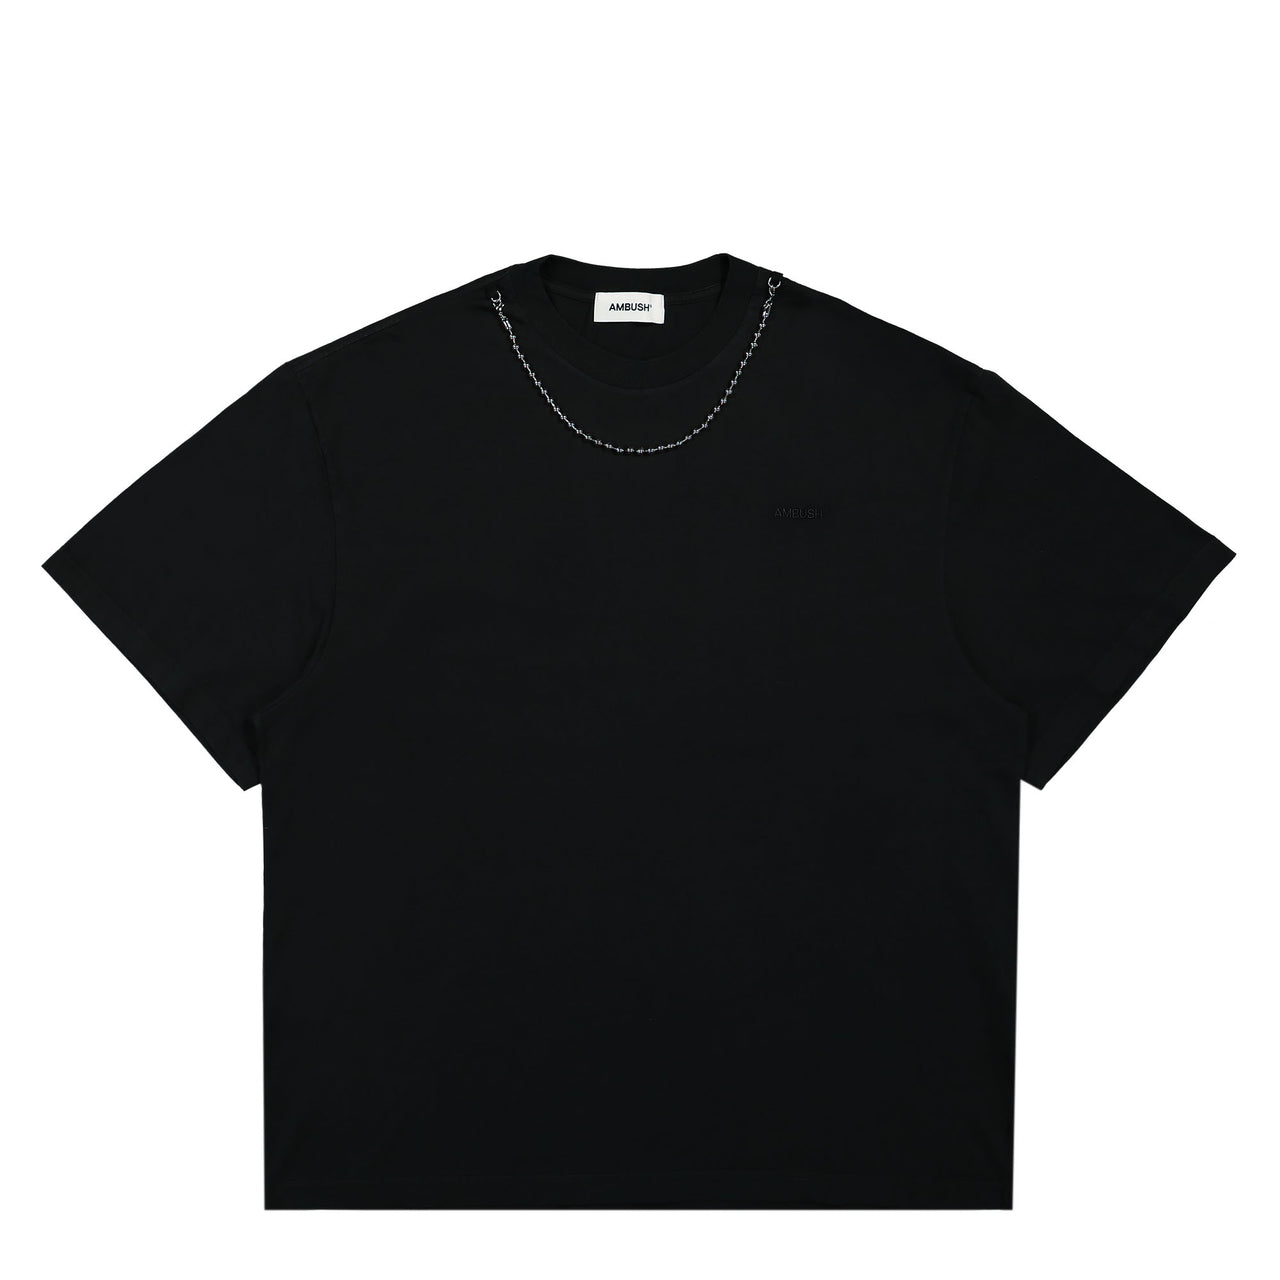 Ballchain S/S T-Shirt